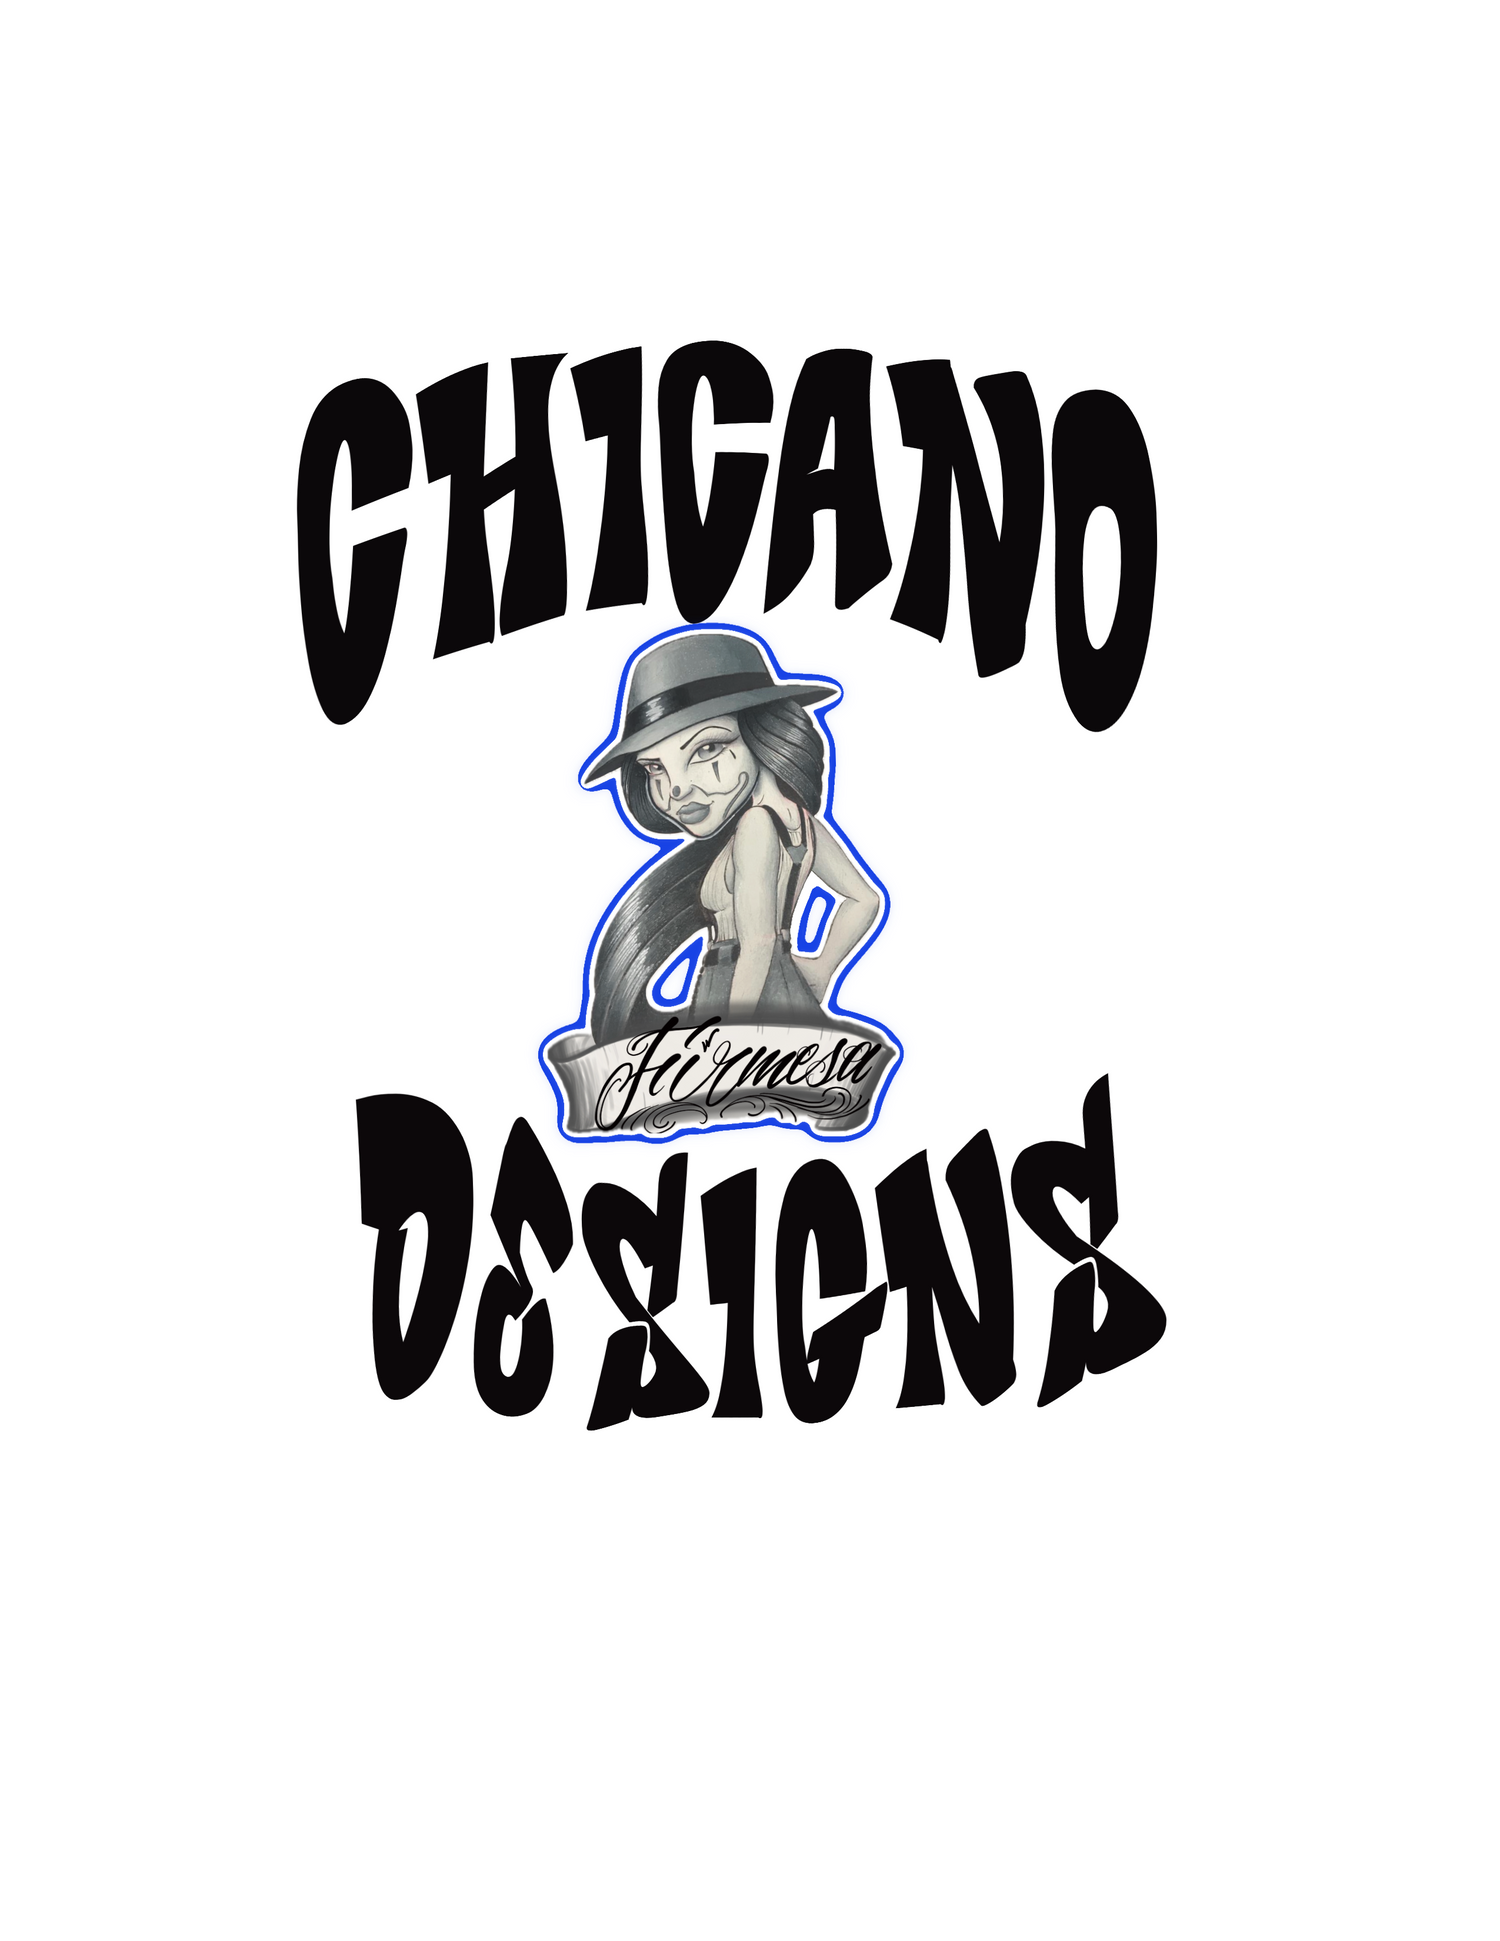 Chicano designs